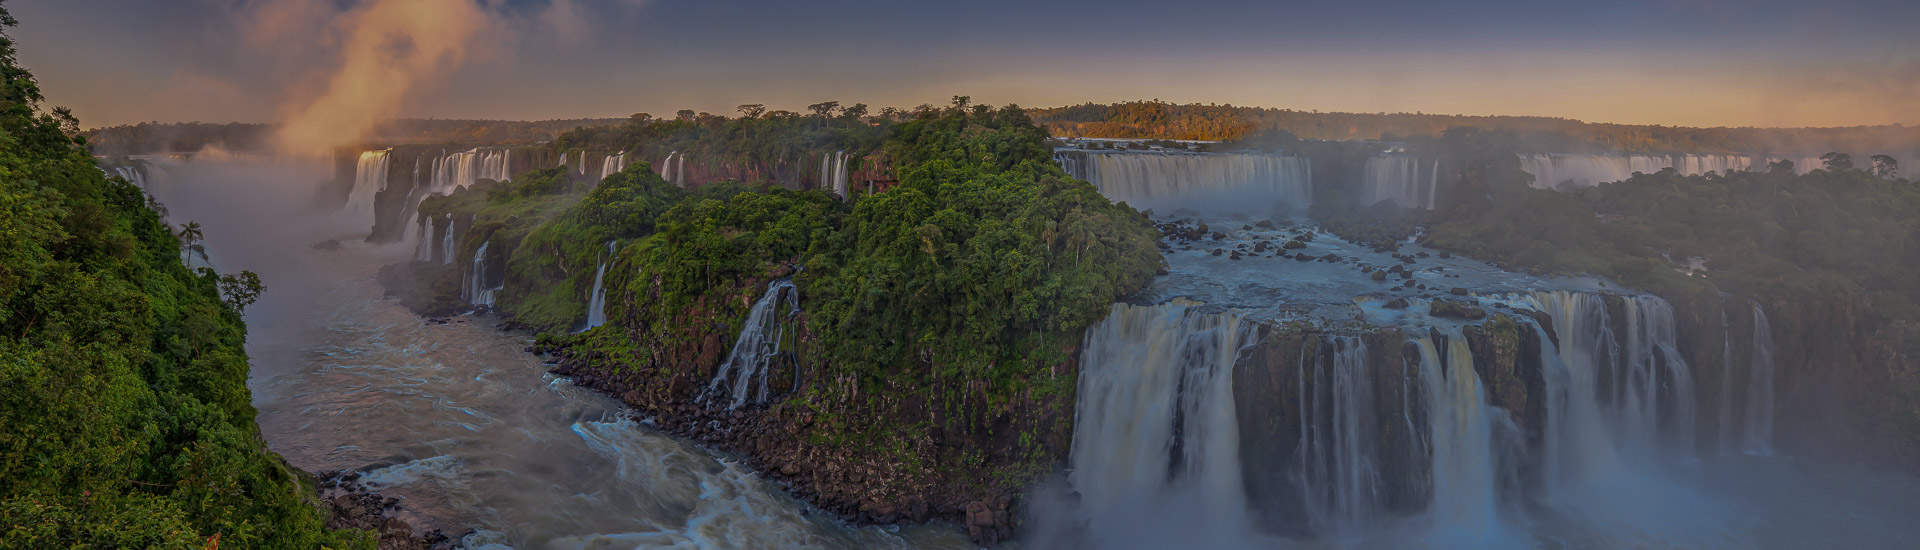 Brasilien Reise Iguazu Wasserfaelle